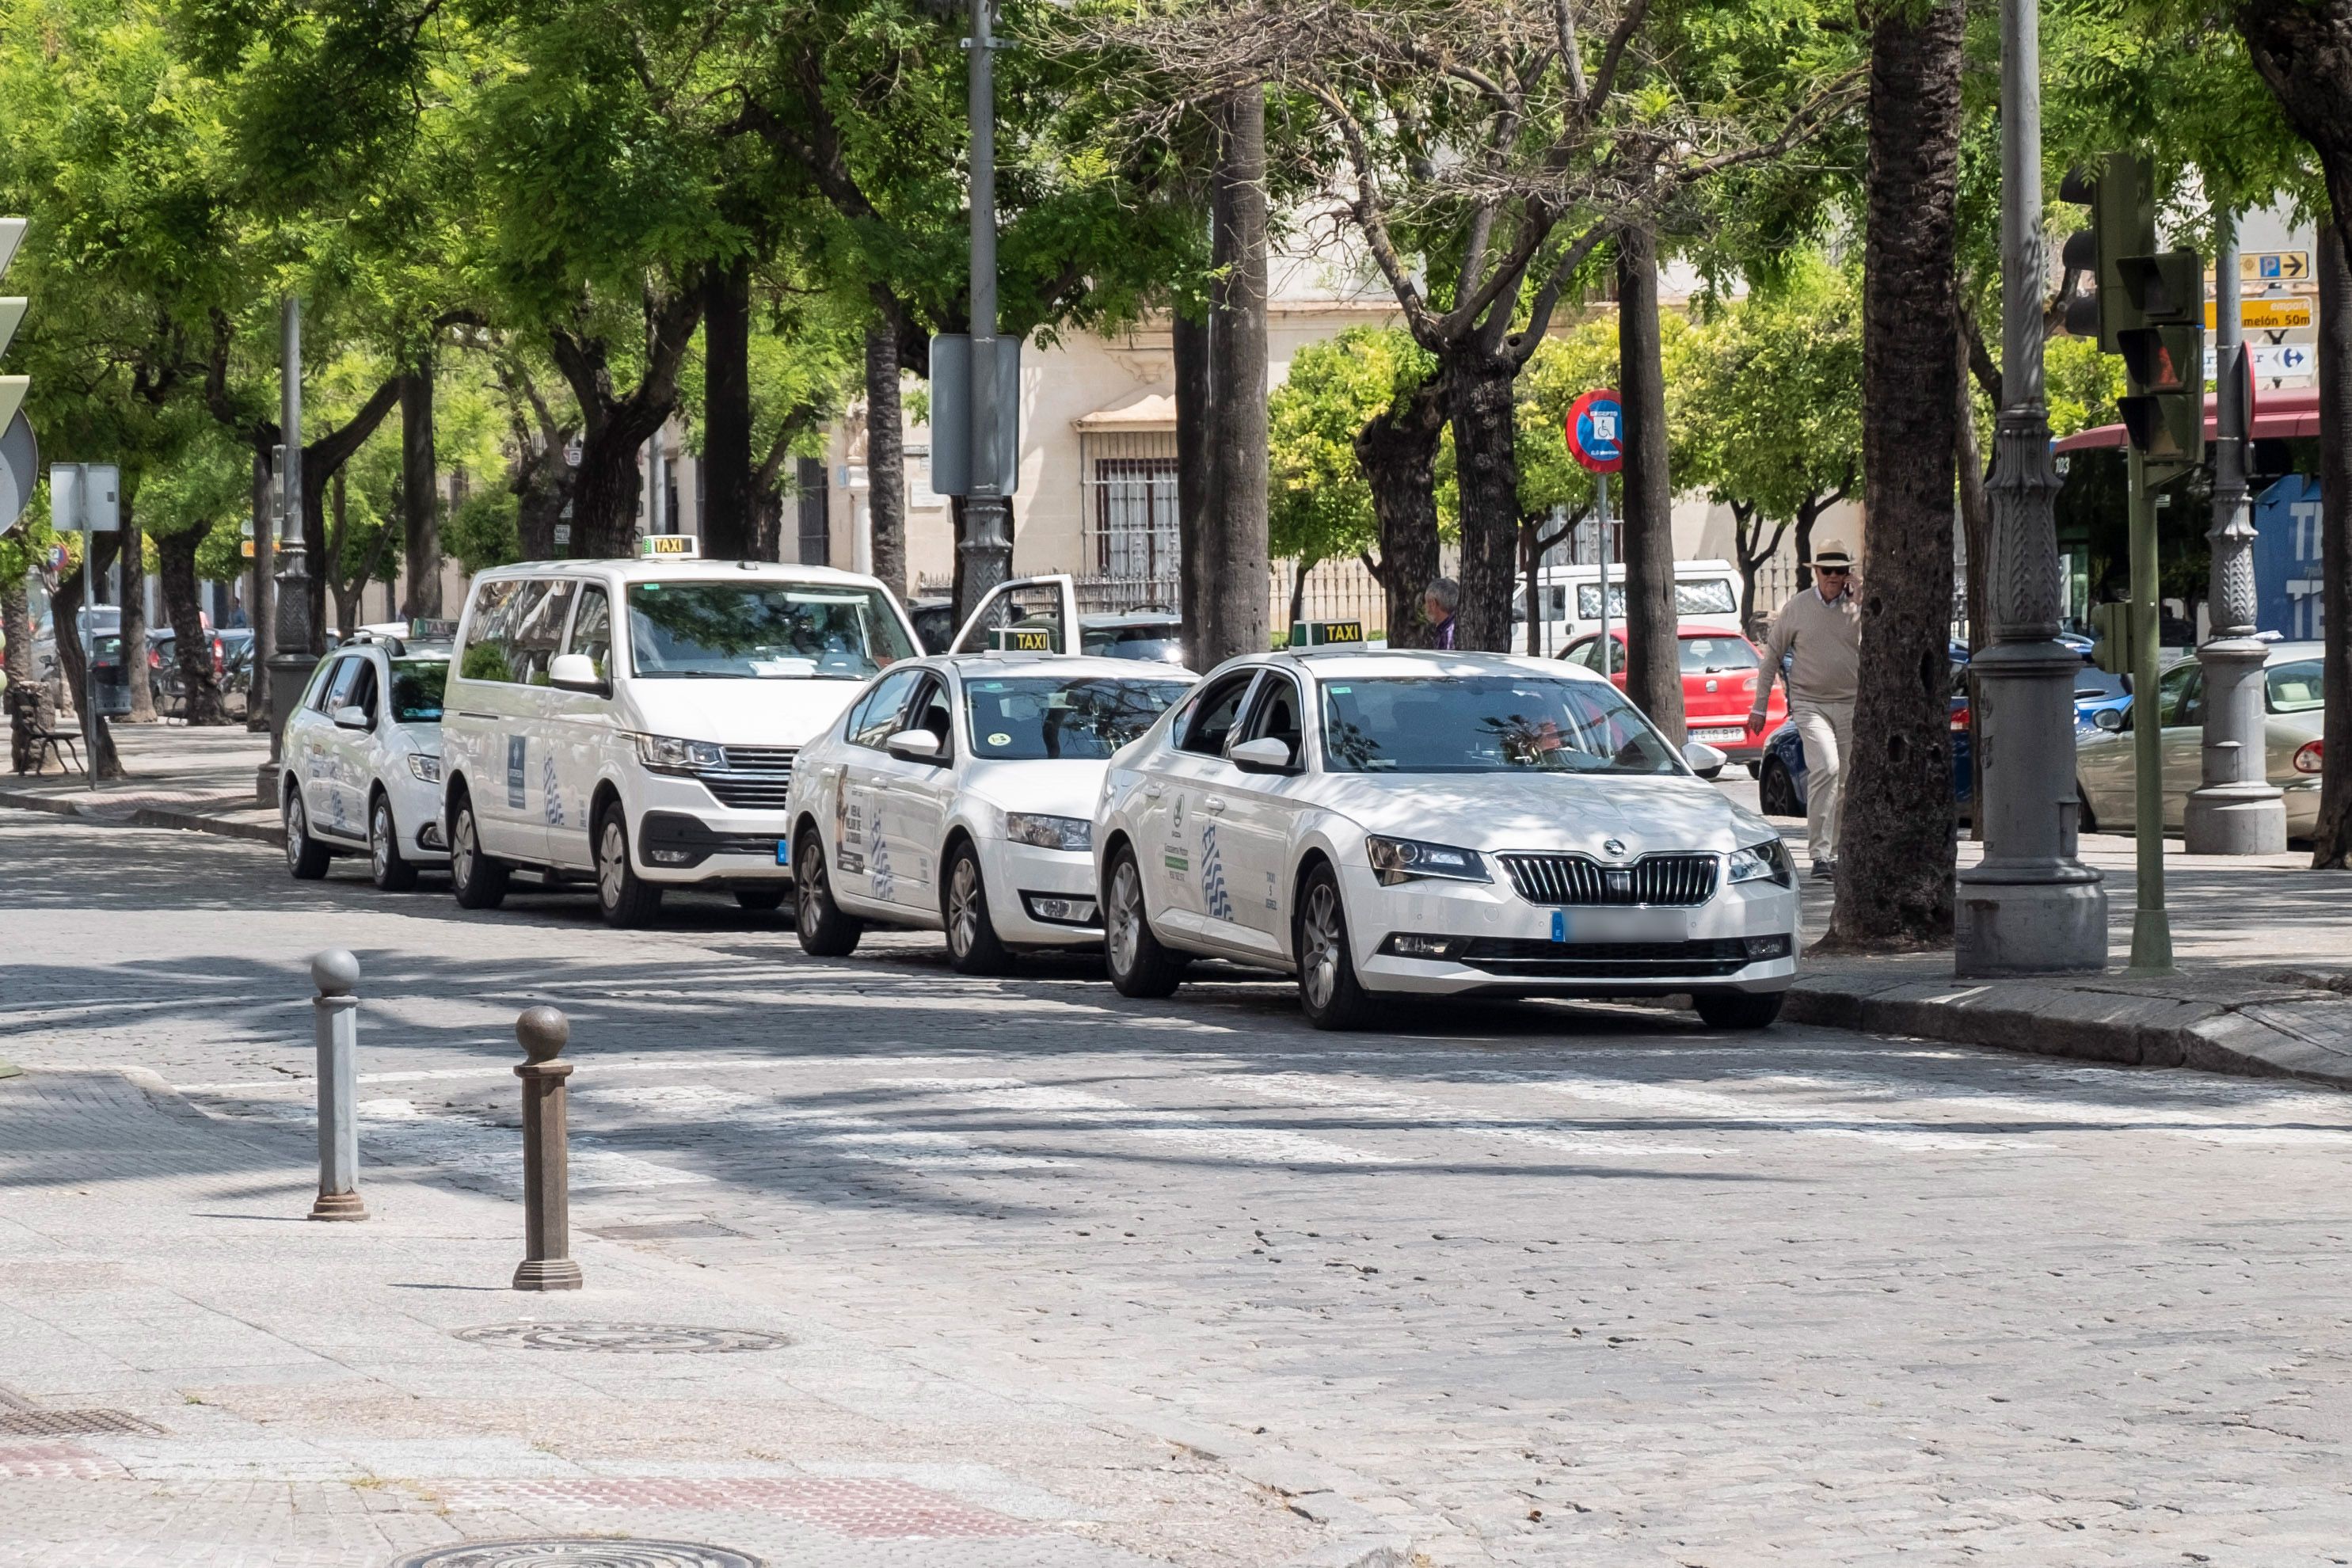 Parada de taxis en Cristina, en Jerez, en una imagen reciente.